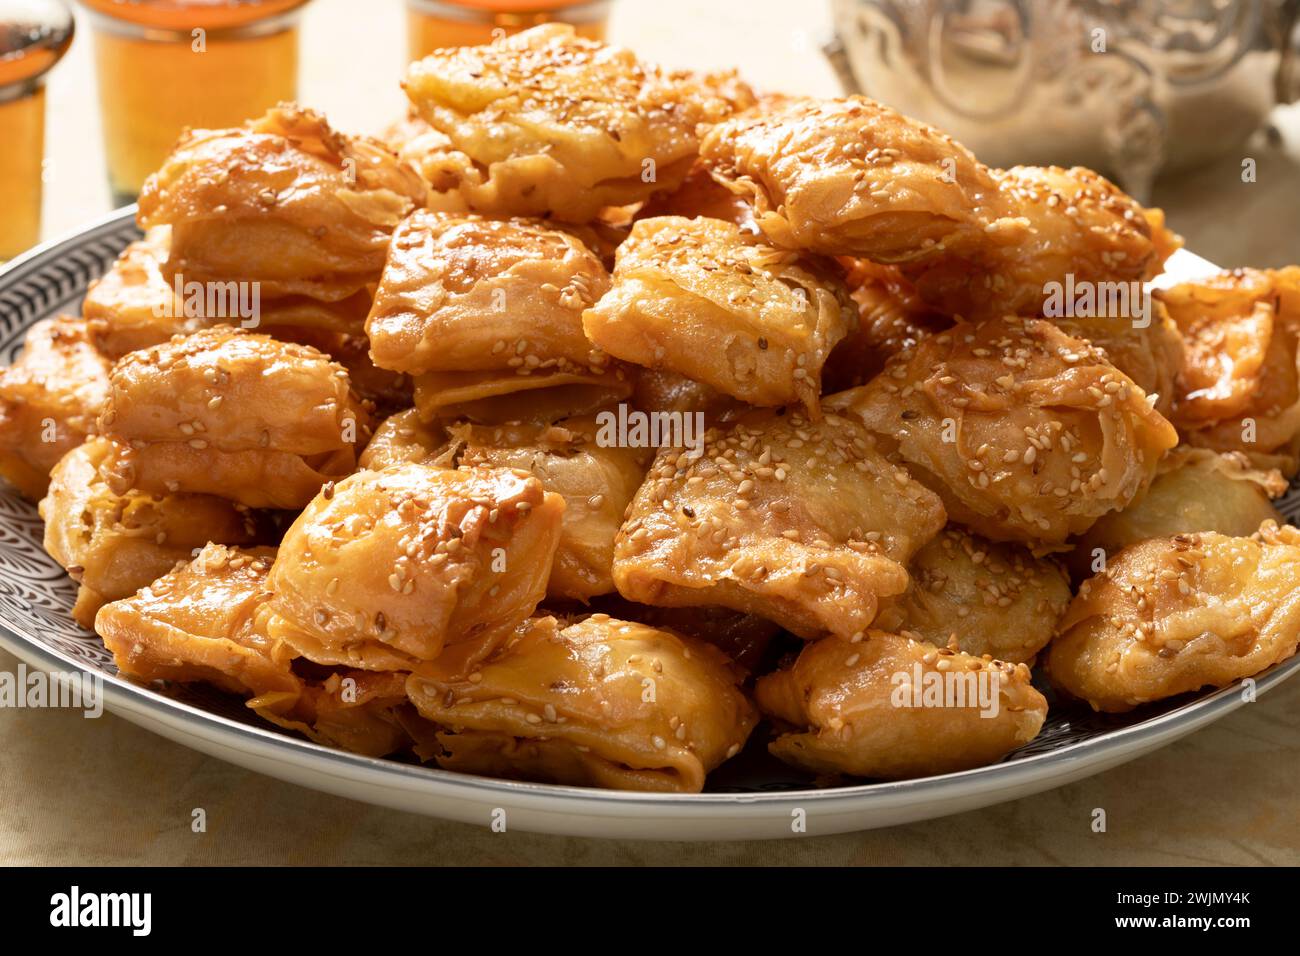 Plat avec des biscuits au miel de Rghayef frits, de forme carrée, de gros plan Banque D'Images